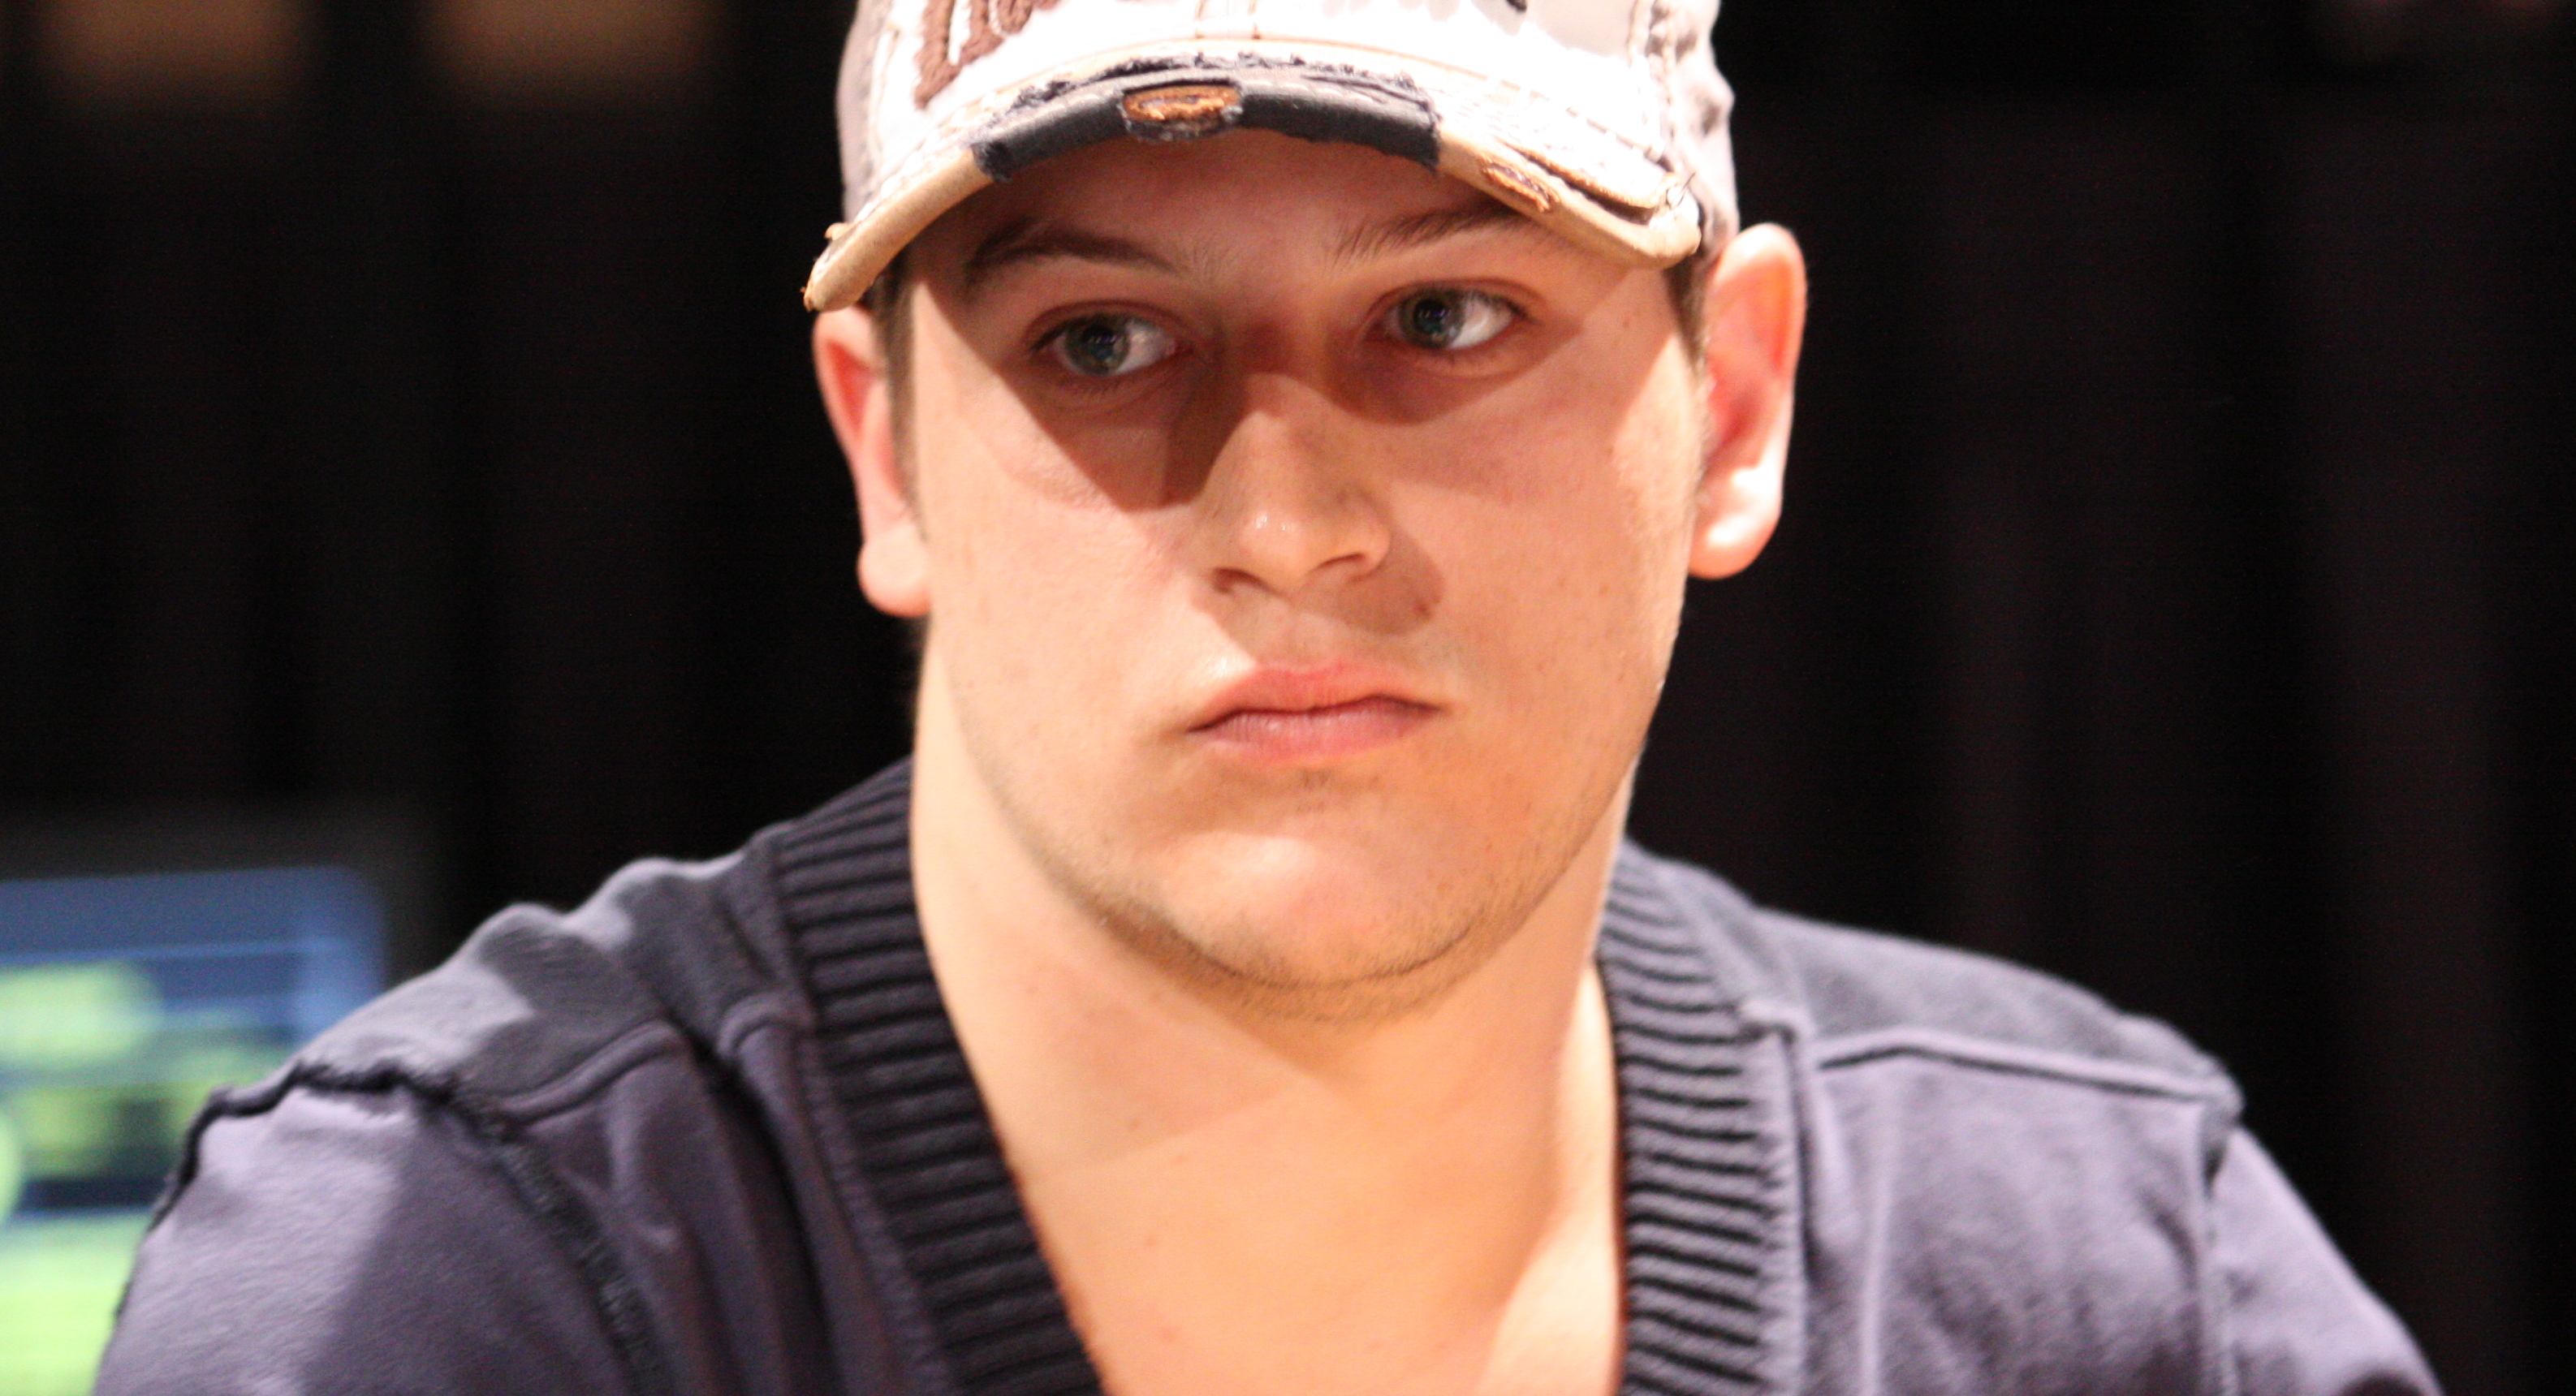 Giocatore di Poker Matt Marafioti scompare nel nulla, giallo sulla sua sorte